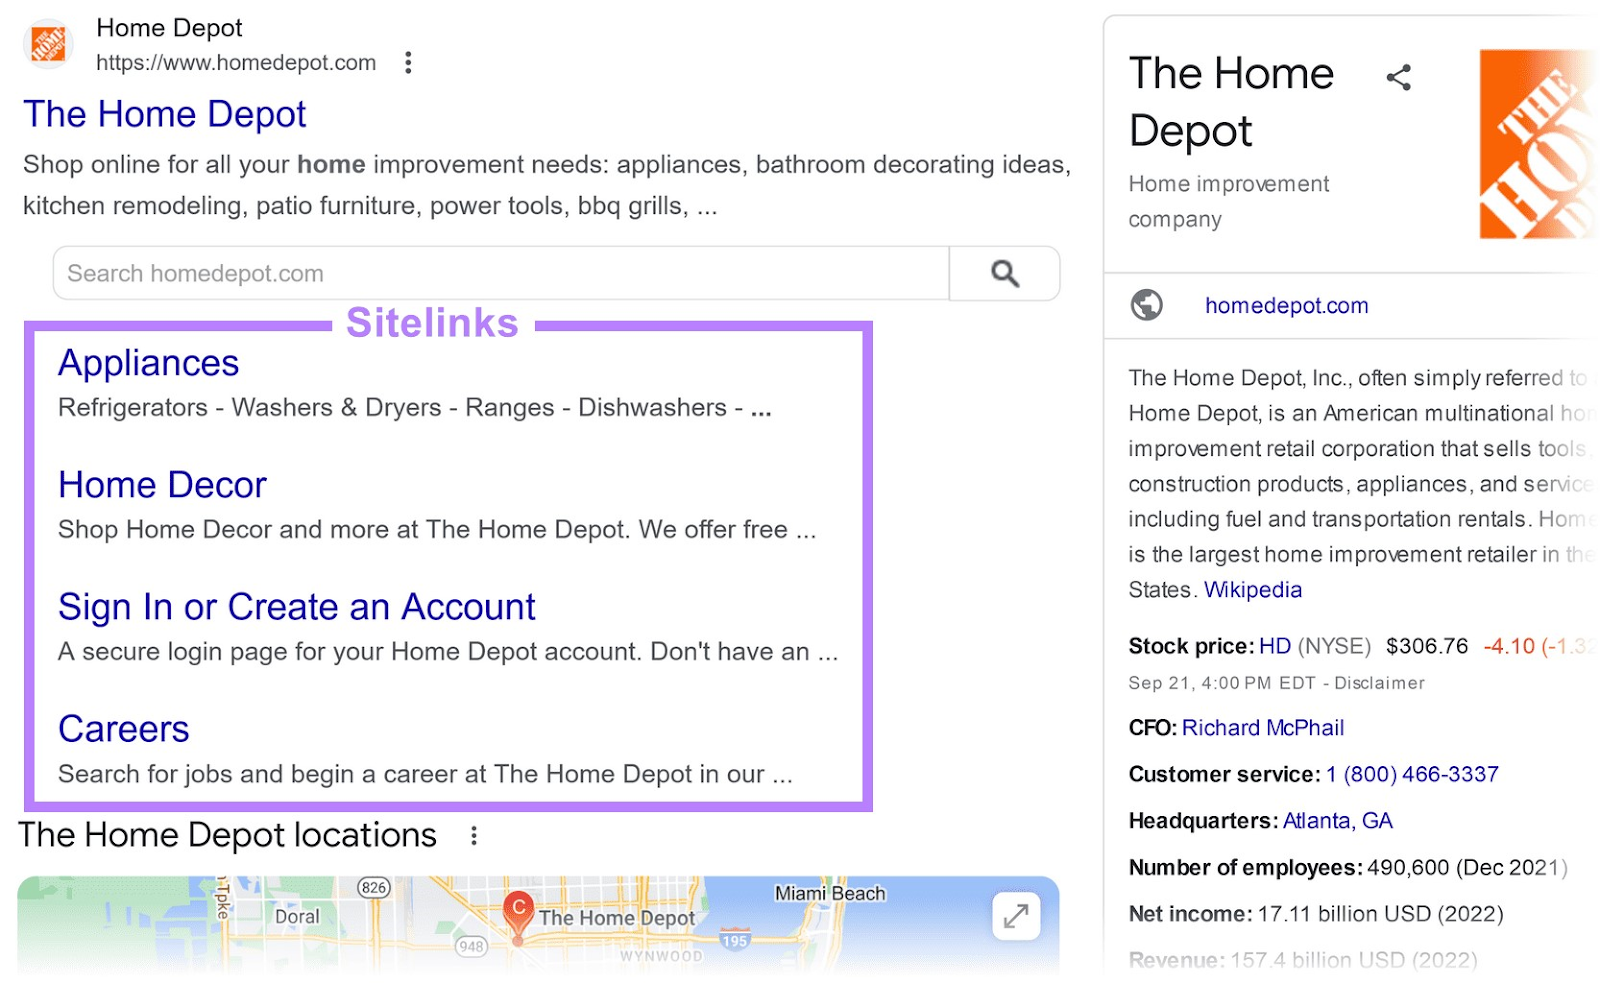 The Home Depot on Google SERP